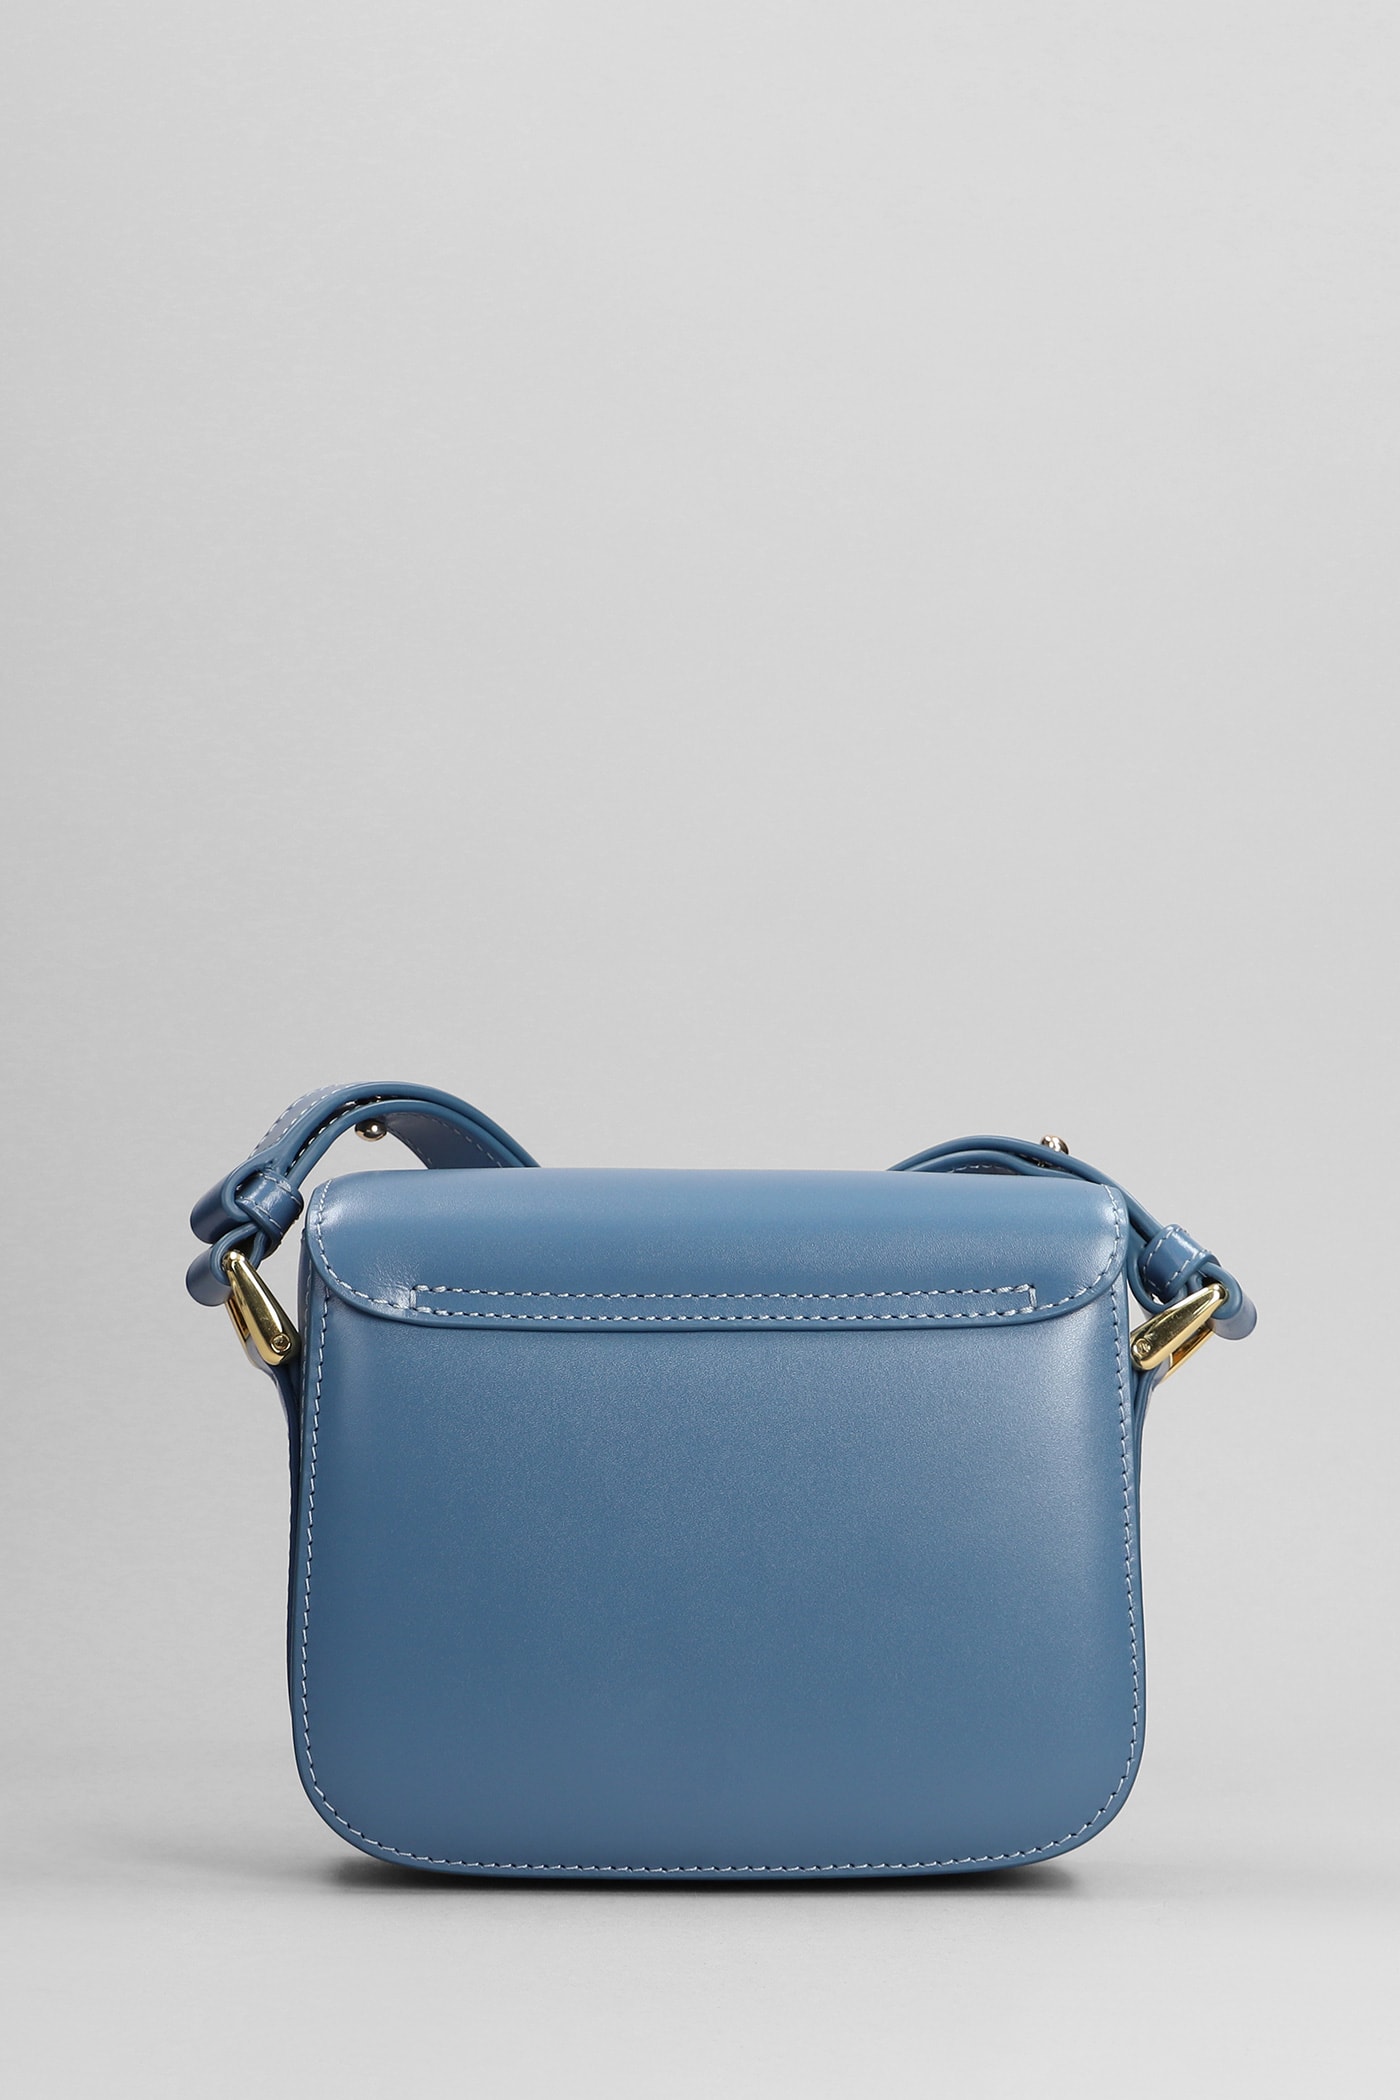 Shop Apc Grace Mini Shoulder Bag In Blue Leather